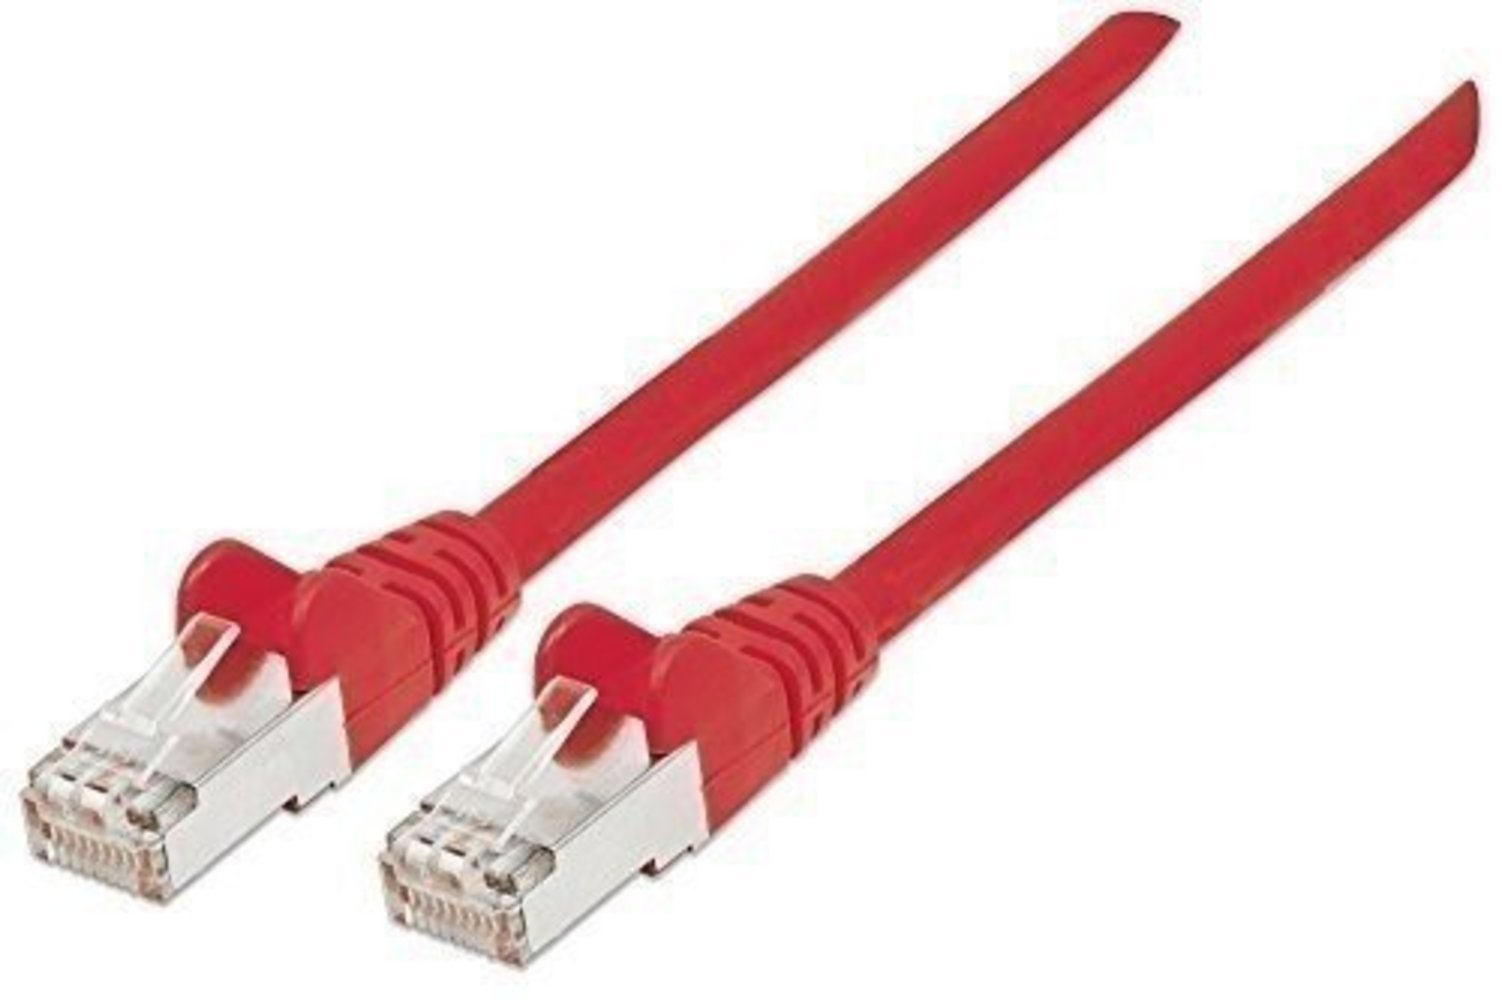 Titel: INTELLINET Netzwerkkabel Cat6A S/FTP CU LS0H 1.50m Rot - Hochwertiges LAN-Kabel mit RJ-45 Stecker und vergoldeten Kontakten